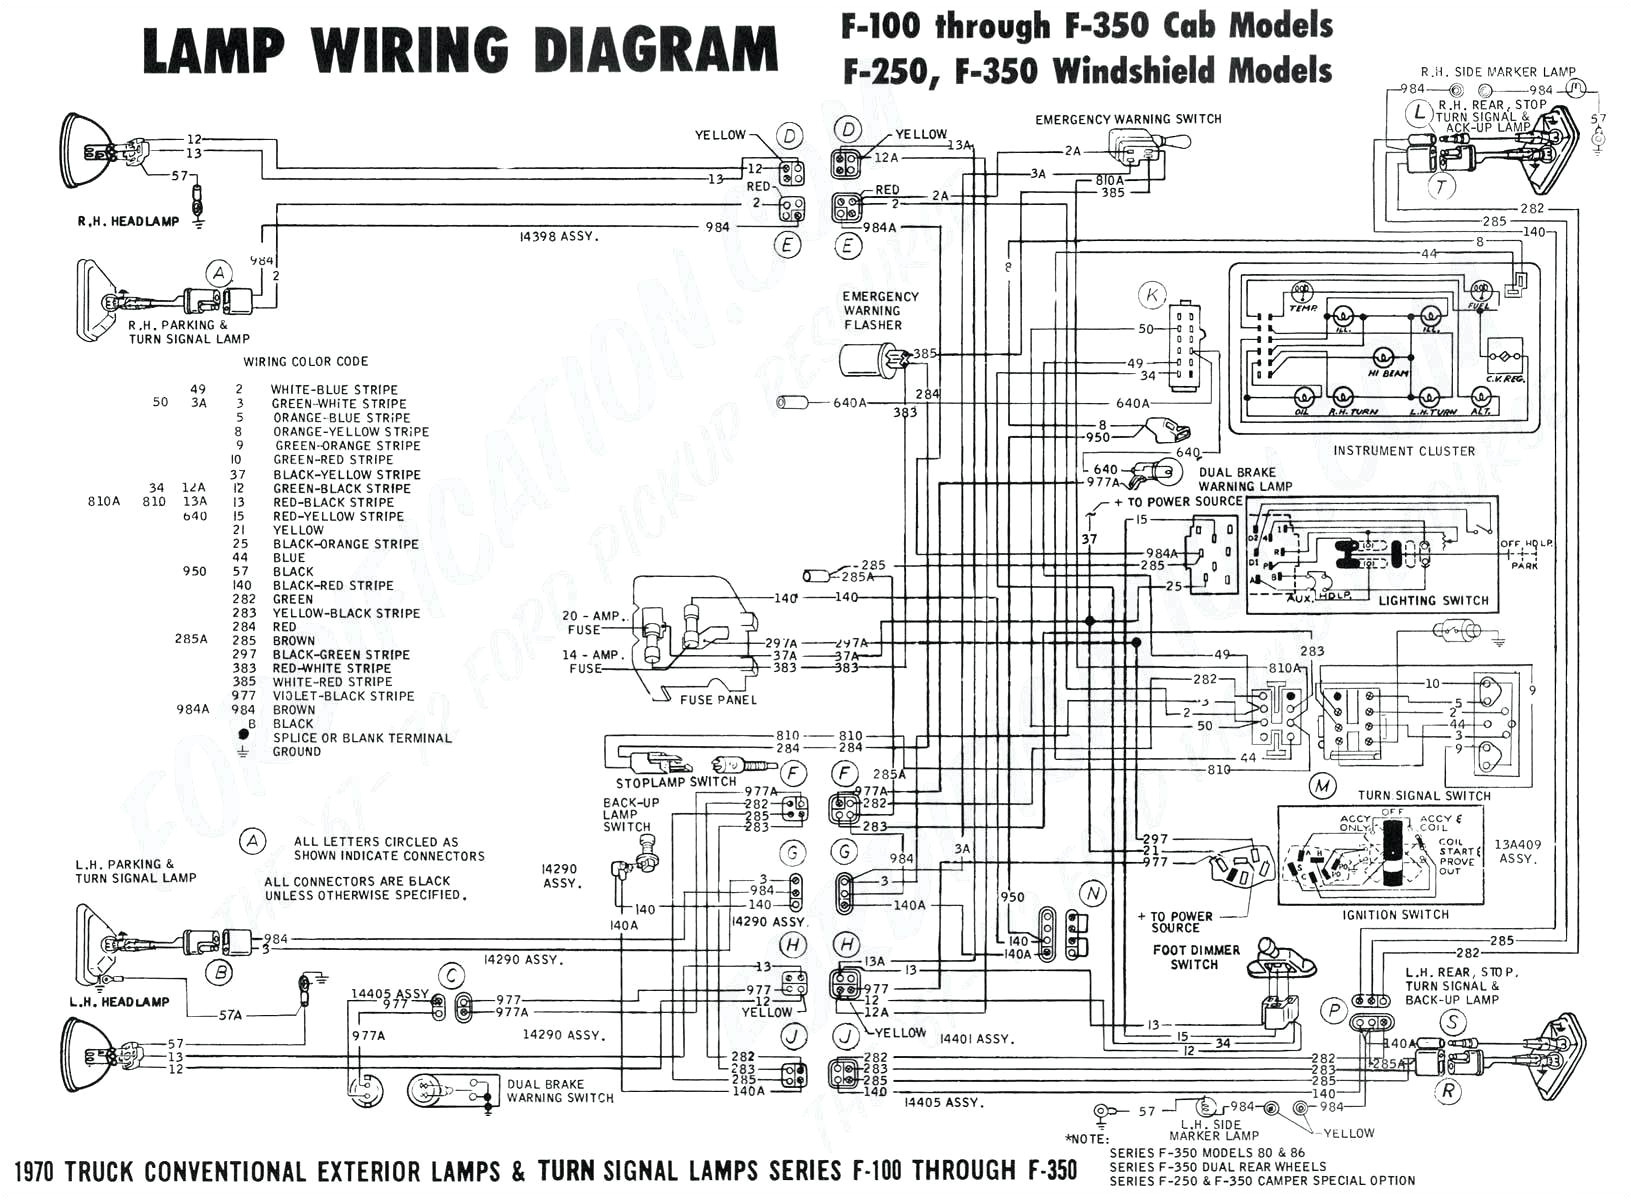 snowex salter wiring diagram swenson spreader wiring diagram free image about wiring diagram rh wattatech co 14t jpg